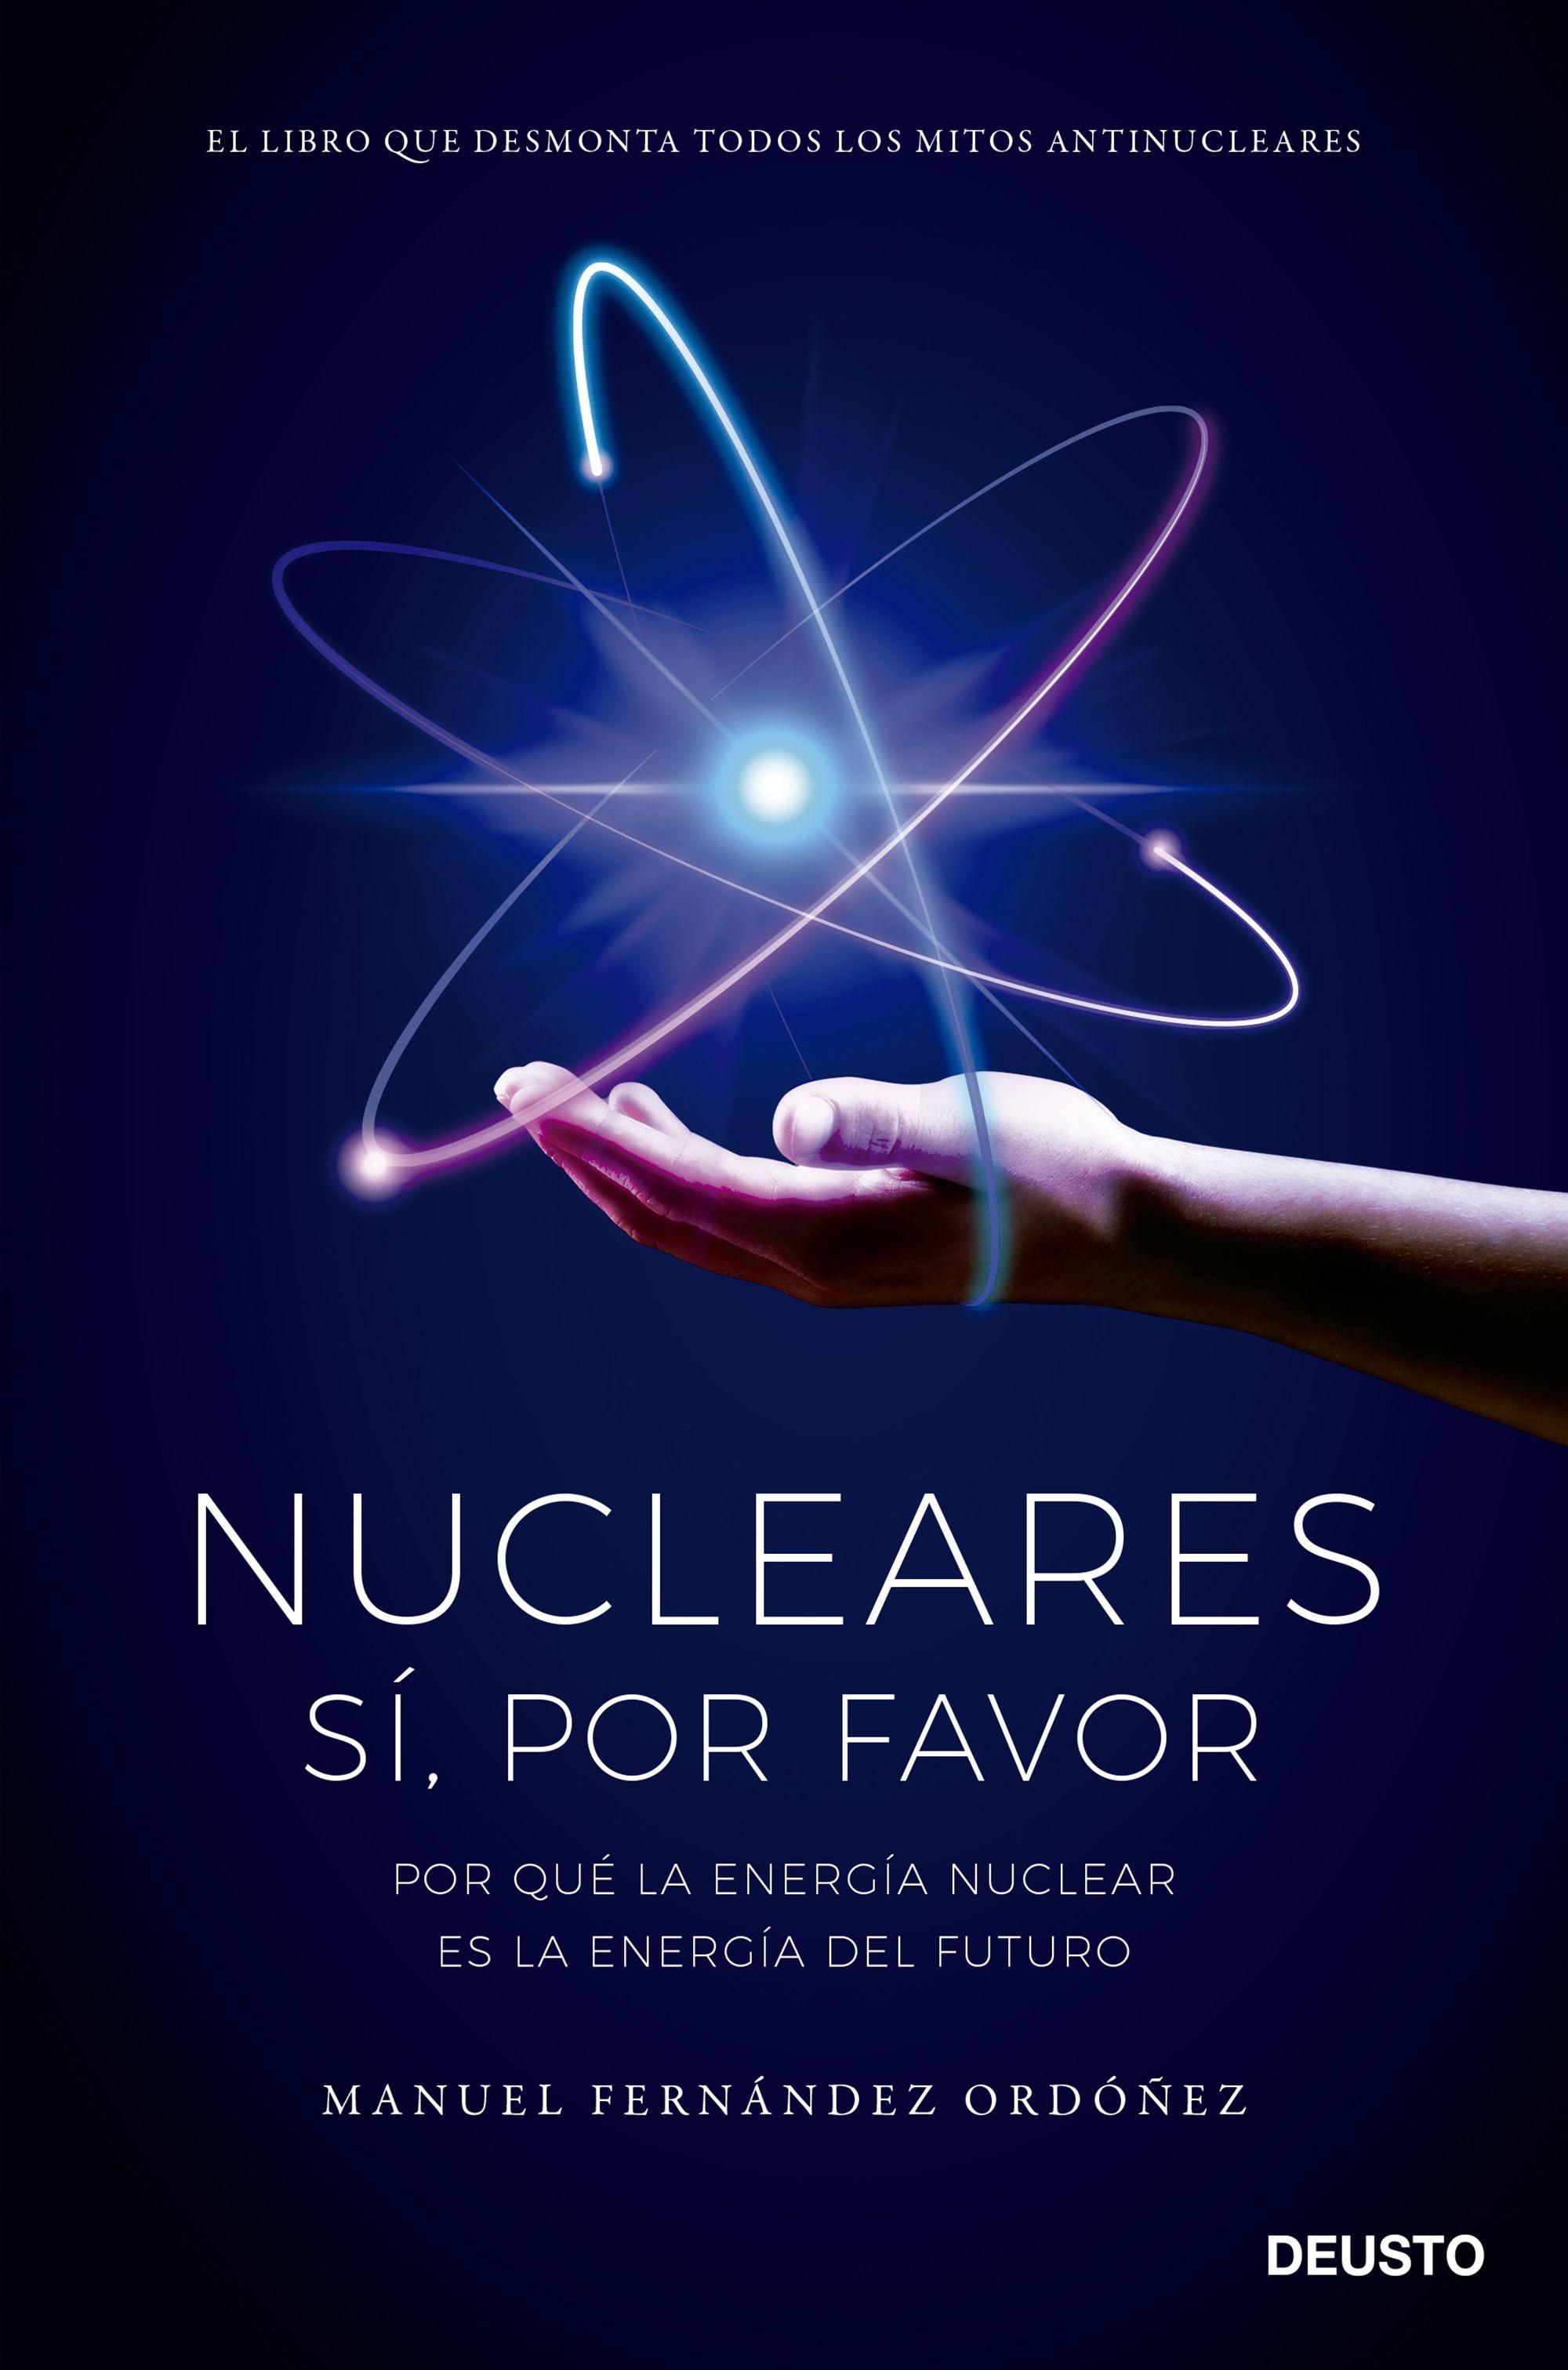 Nucleares: Sí, por Favor "Por que la Energía Nuclear Es la Energía del Futuro"